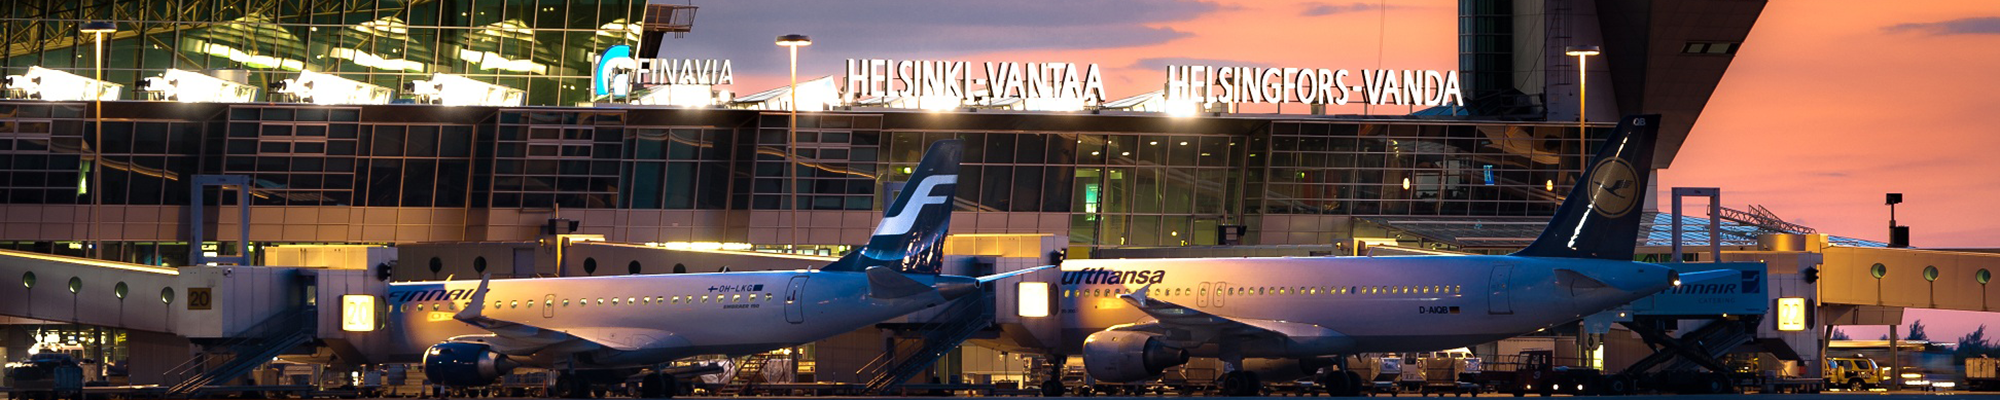 Helsinki-Vantaa airport